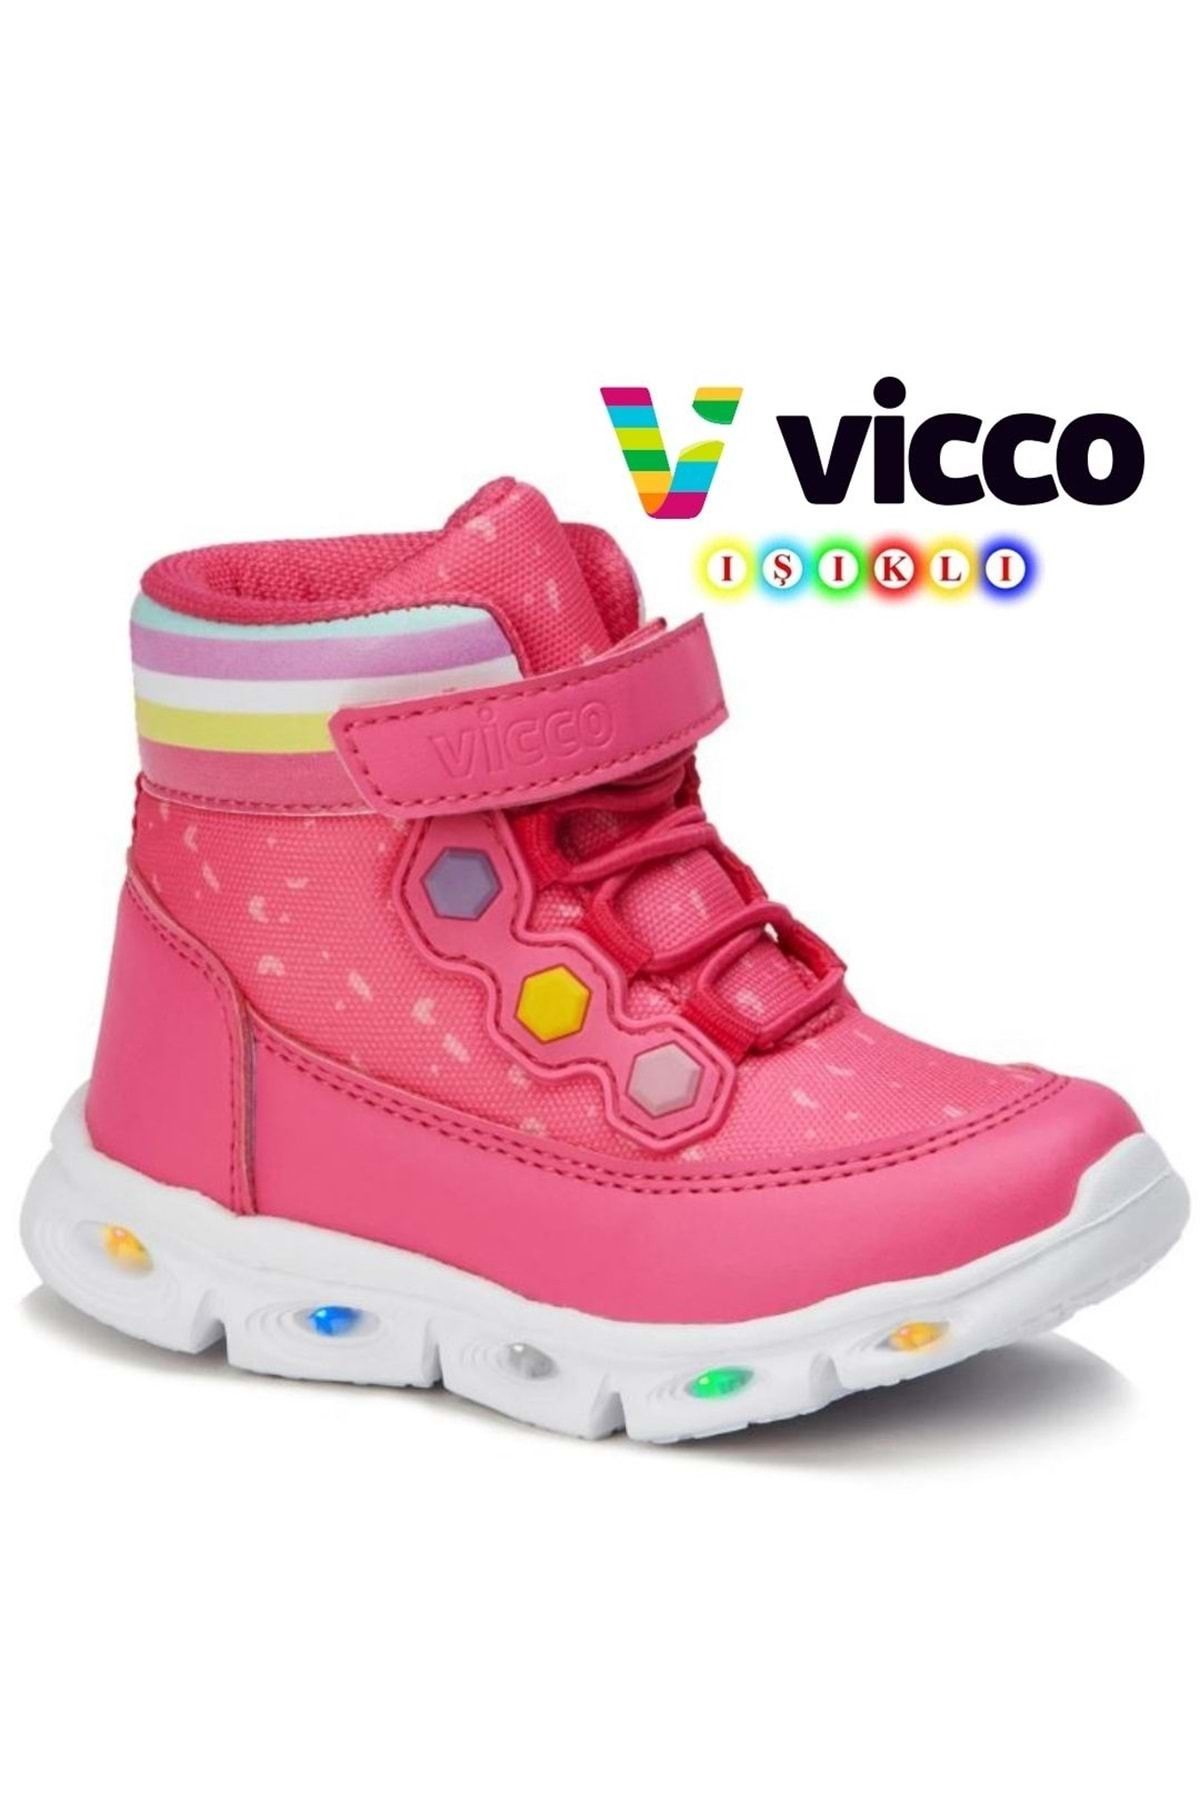 Kids Club Shoes Vicco Mizu Işıklı Phylon Taban Ortopedik Çocuk Boğazlı Spor Ayakkabı FUŞYA